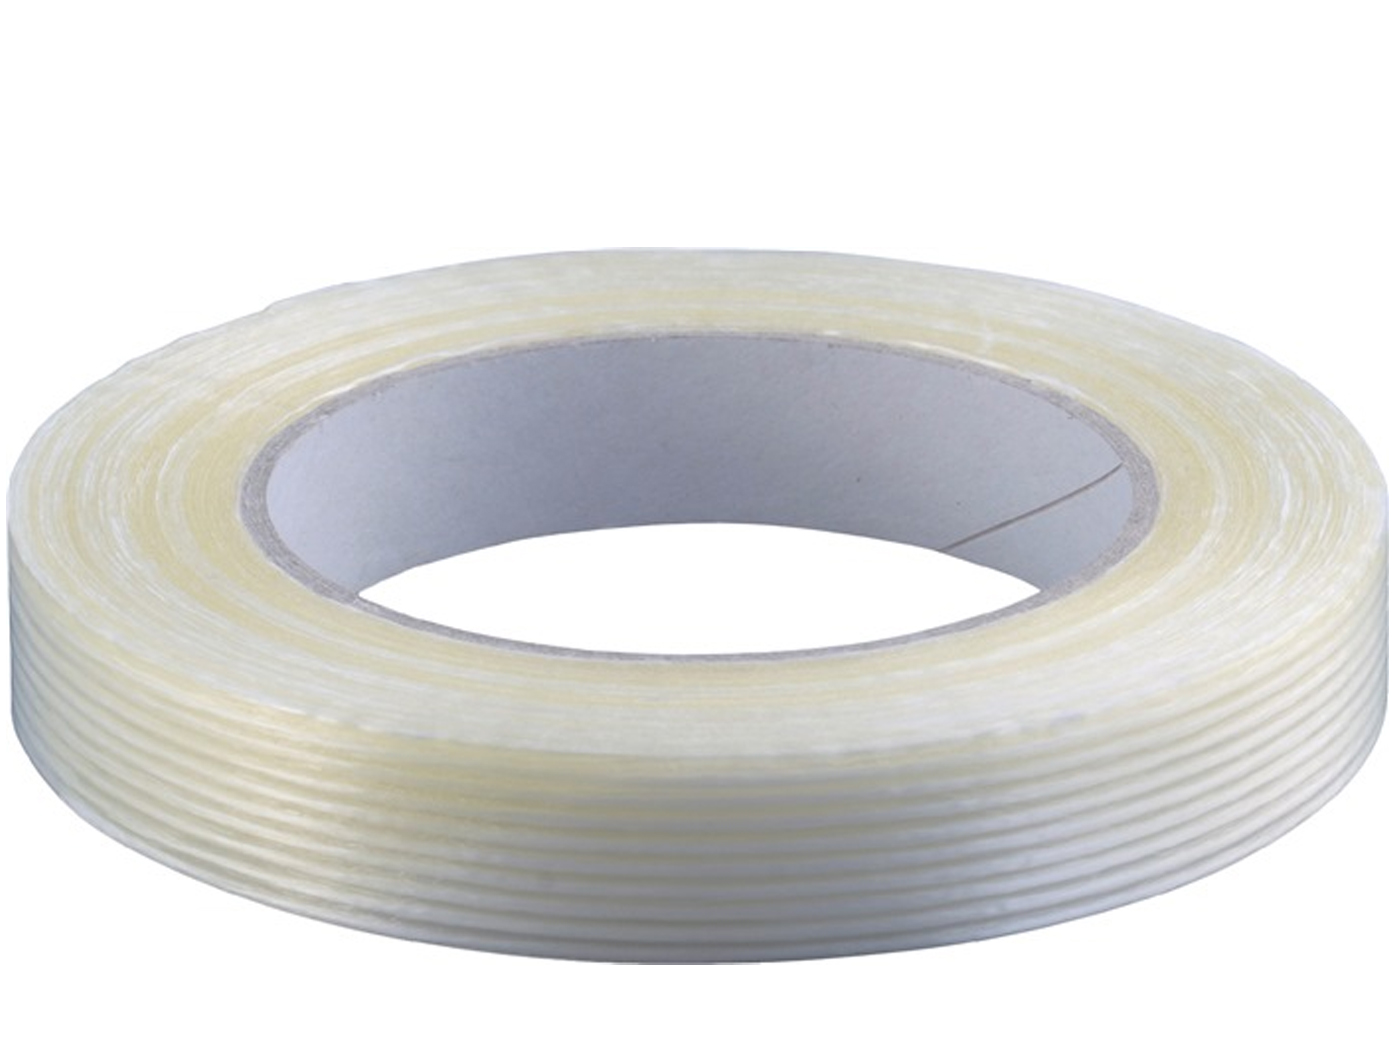 Filamentband lengte 50m, breedte 19mm transparant PP-folie